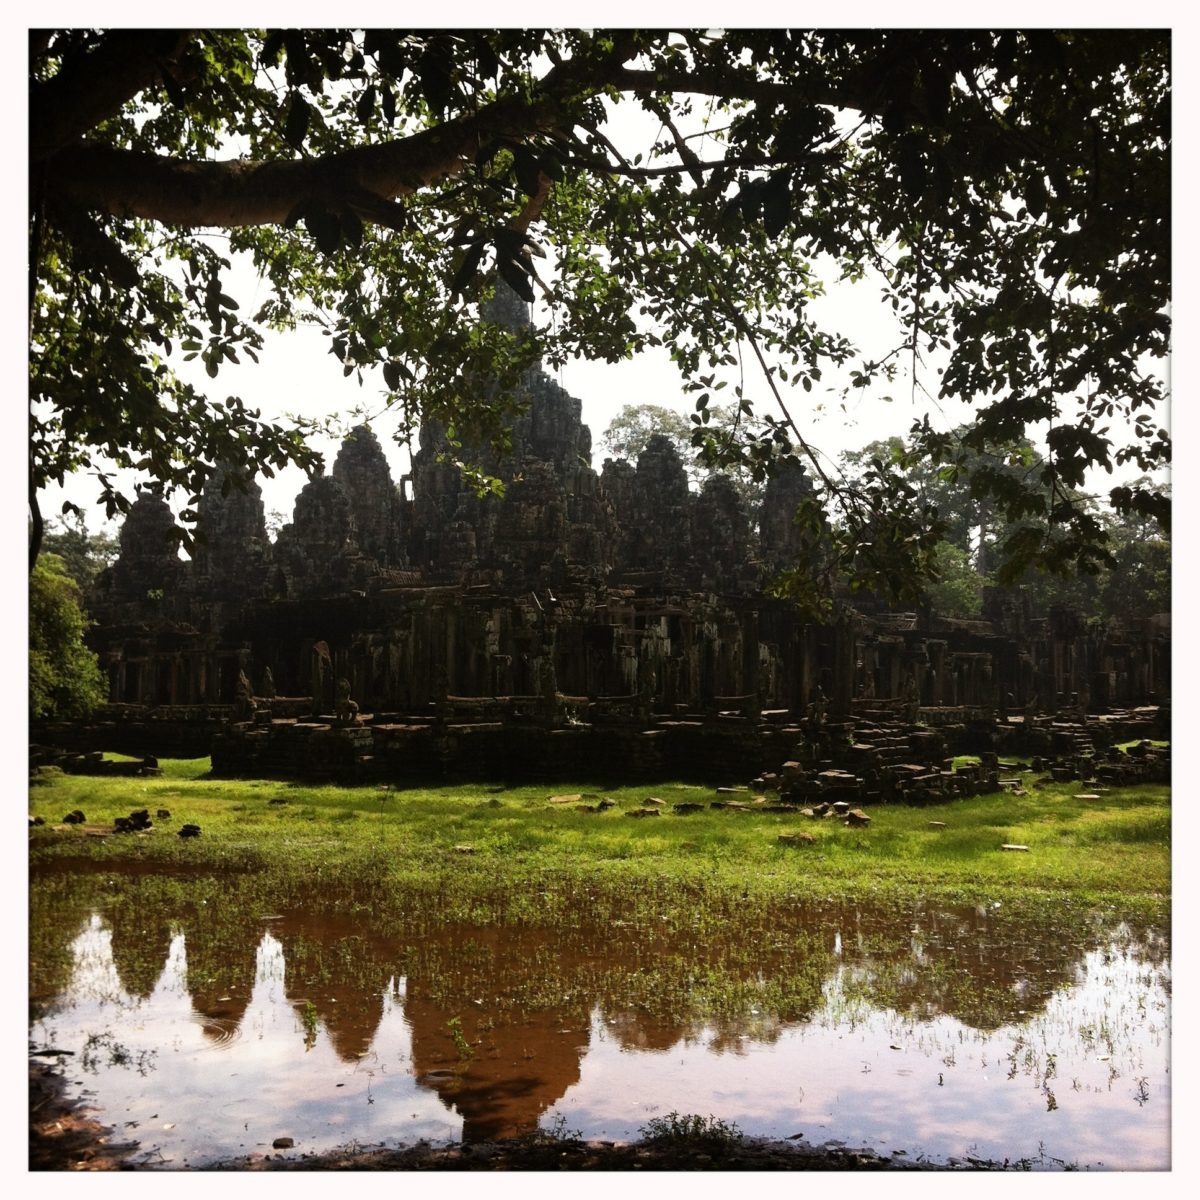 Angkor Wat: Bayon